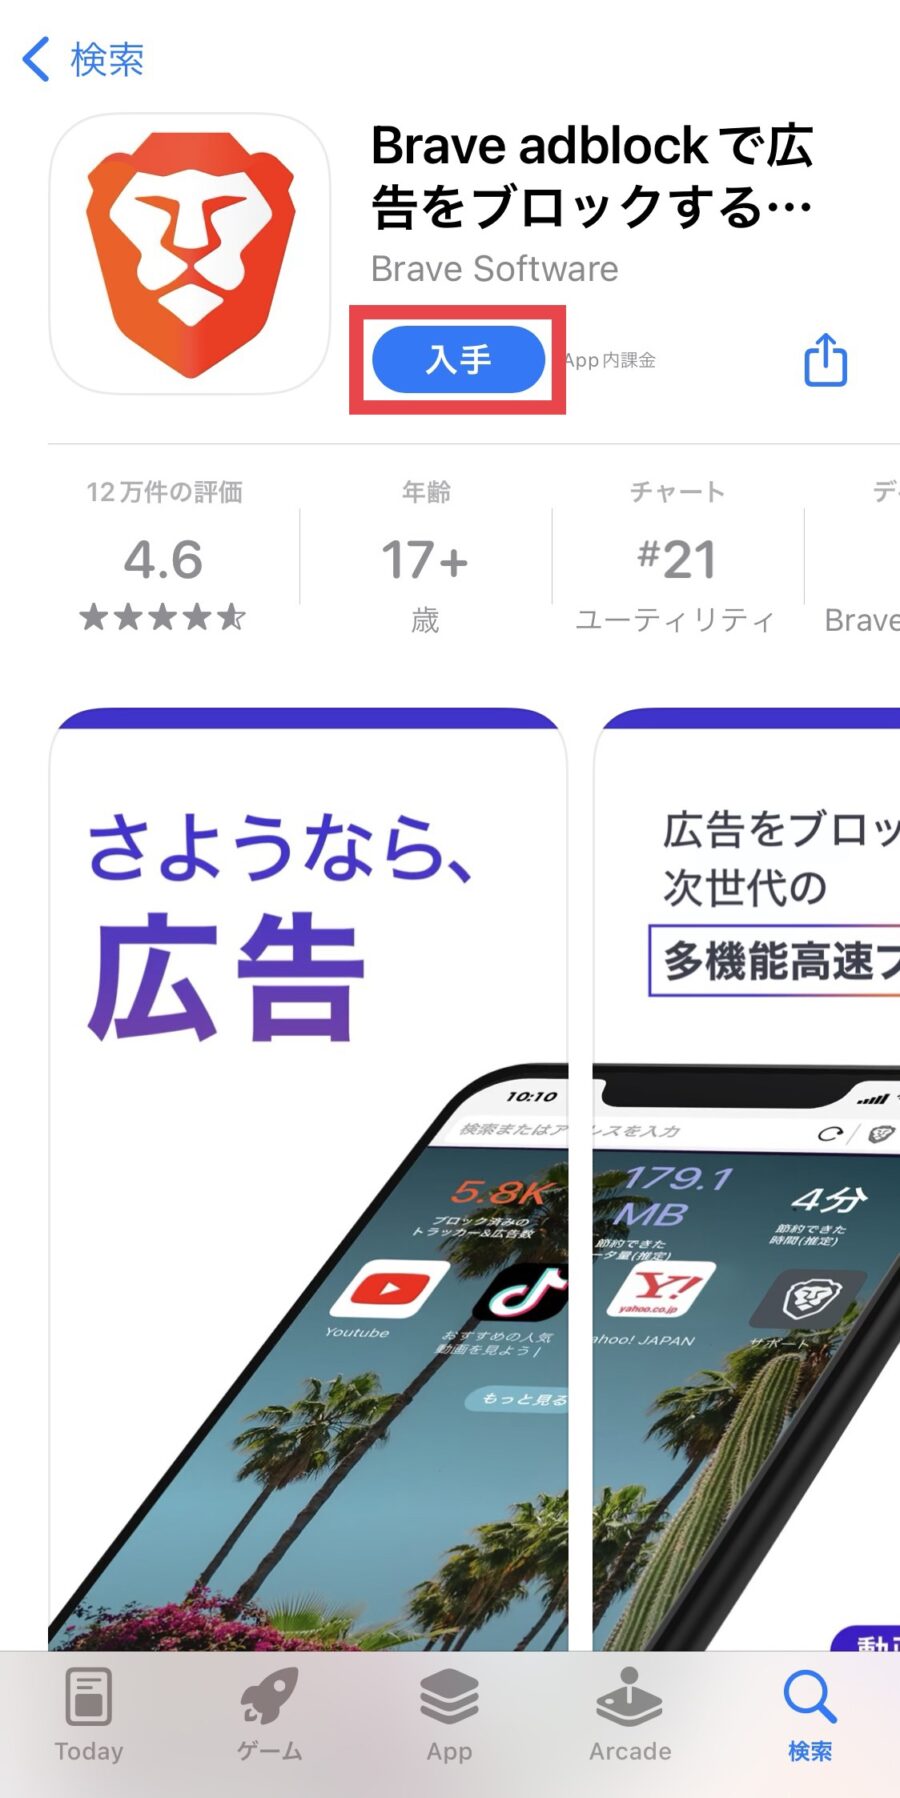 【iPhone版】Braveブラウザの設定・使い方